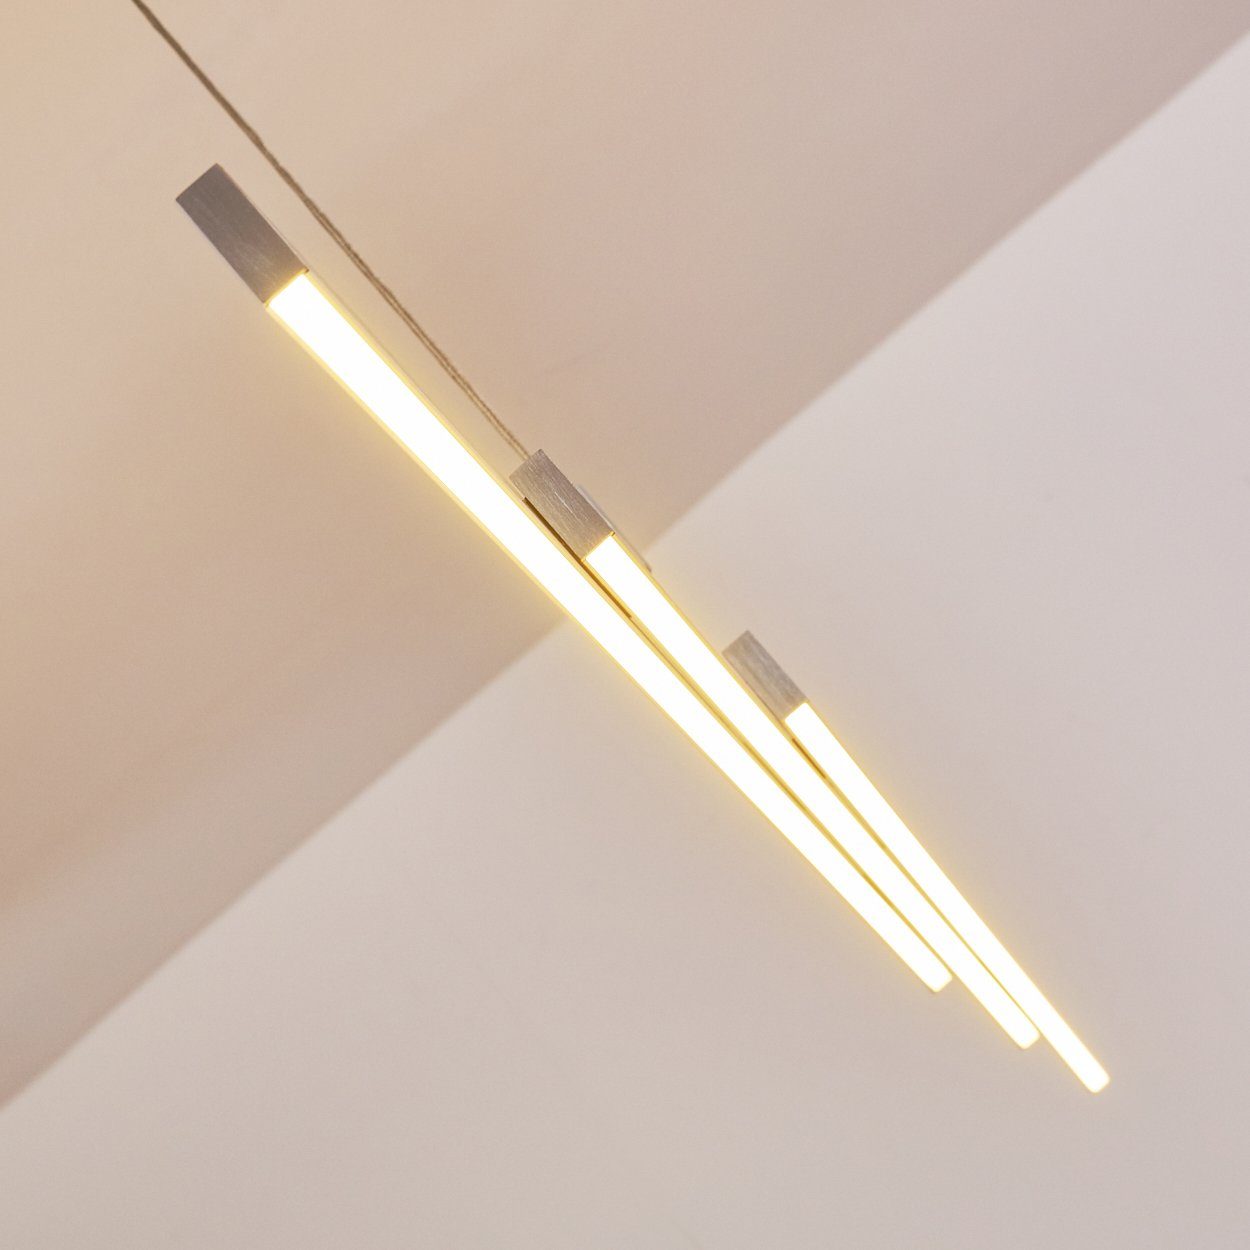 LED Design Raum Wohn Beleuchtung Lampen Schlaf Pendelleuchte Hänge Ess hofstein Zimmer Pendel